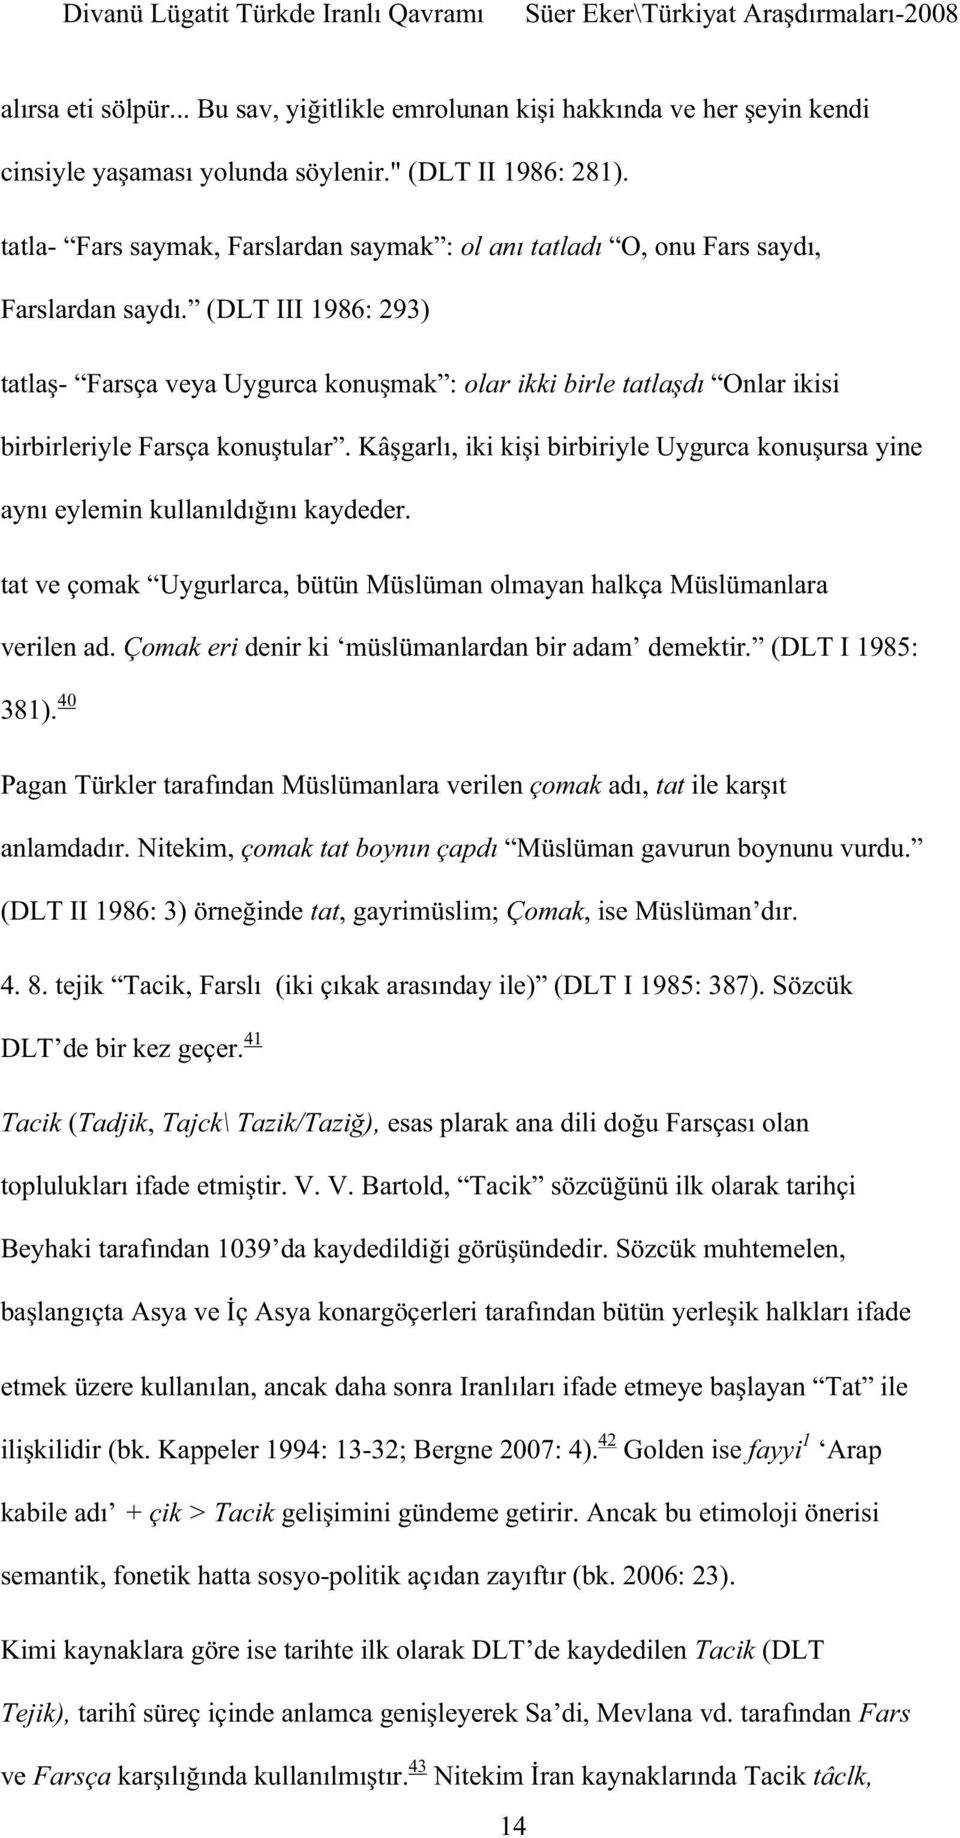 tat, gayrimüslim; Çomak (DLT I 1985: 387). Sözcük DLT de bir kez geçer. 41 Tacik (Tadjik, Tajck\ -32; Bergne 2007: 4).